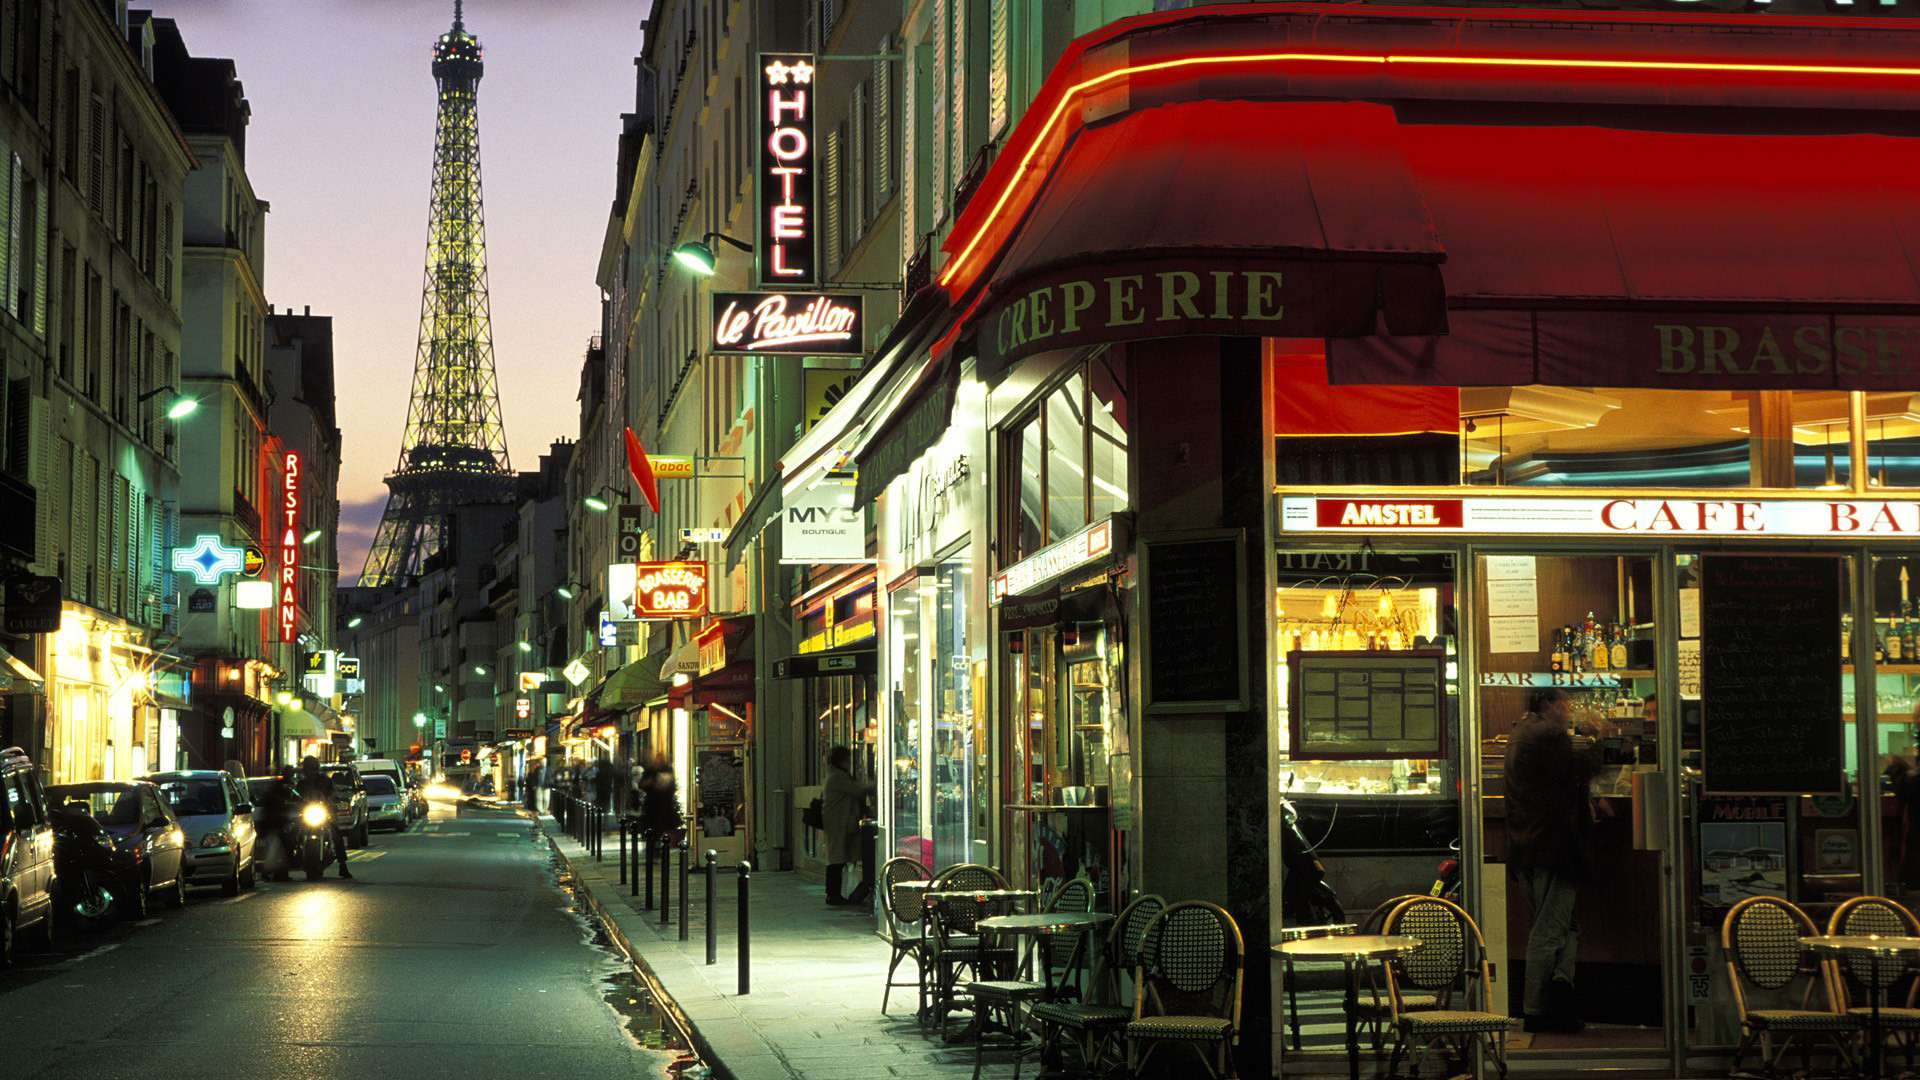 Fond d'ecran Jolie rue de Paris